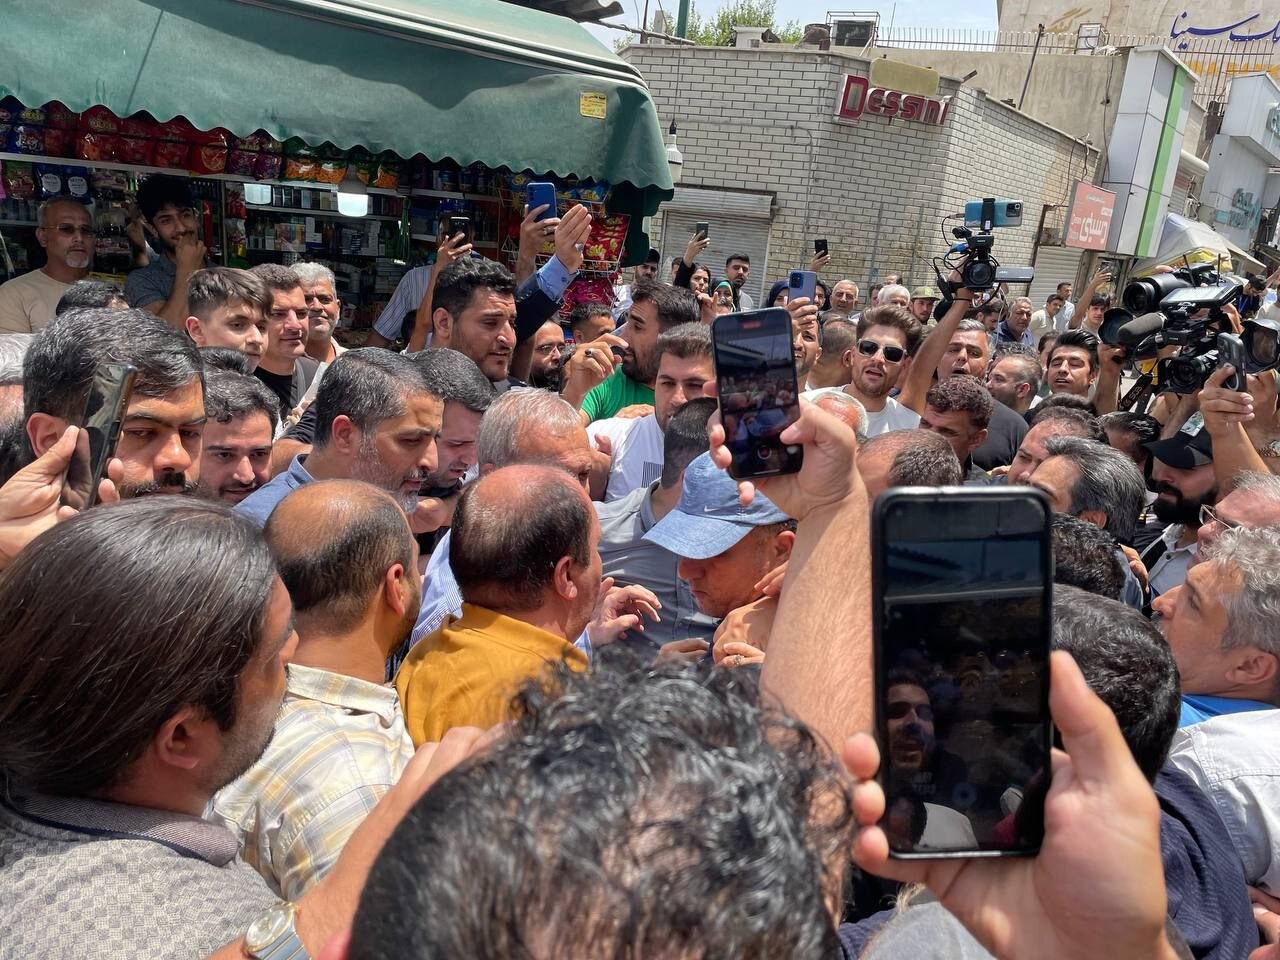 عکسی از مسعود پزشکیان در بازار شوش تهران /آقای کاندیدا محاصره شد